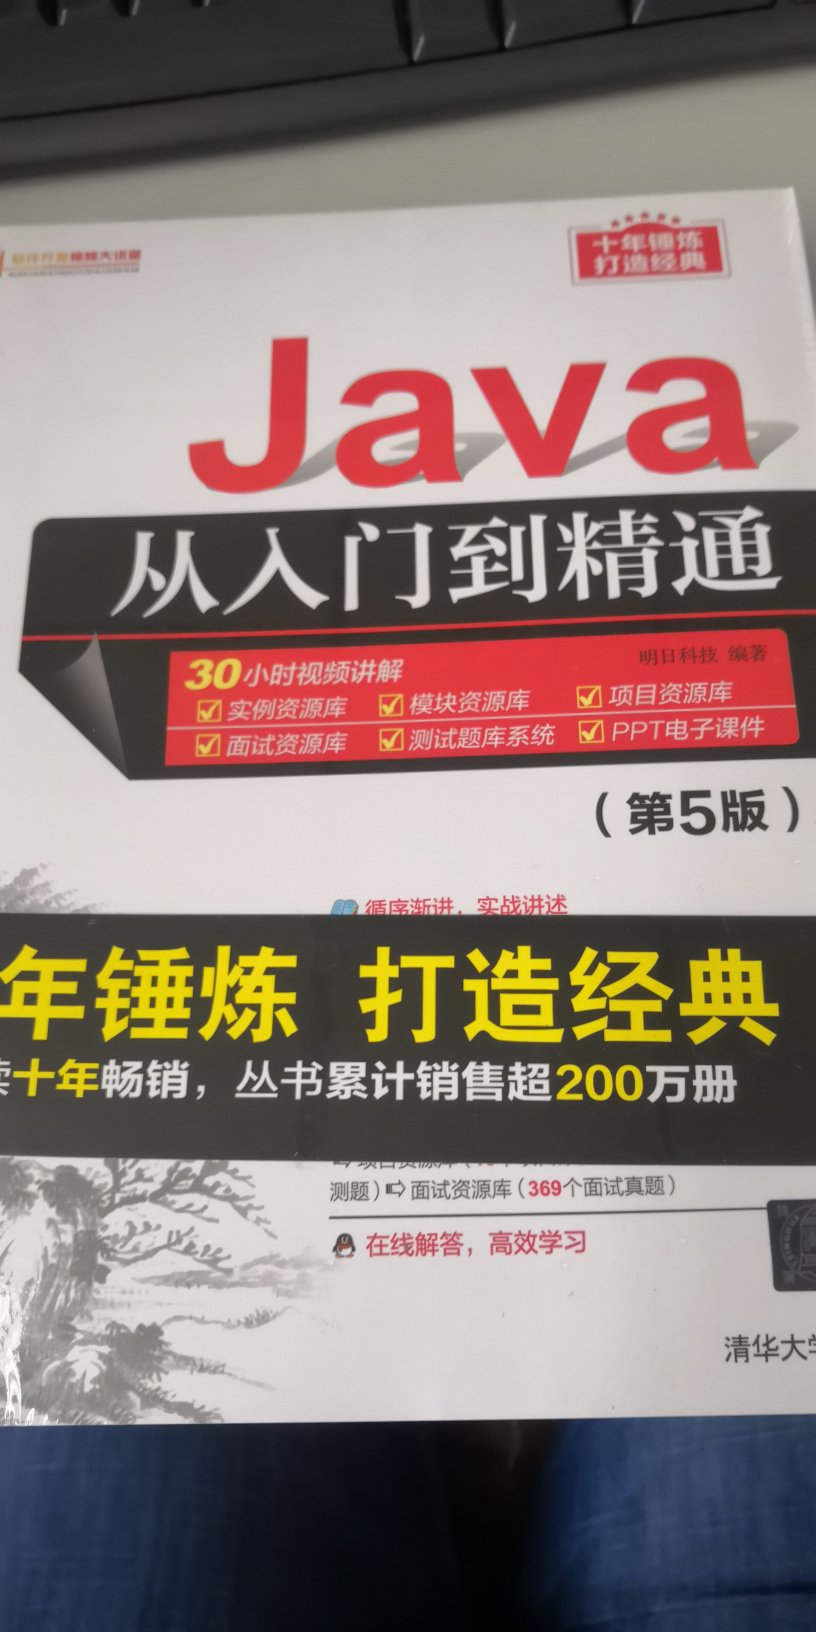 这本Java从入门到精通这本书挺好的，包装的特别好，我觉得特别适合于初学者，感觉很不错，昨天买的今天上午就收到了，很开心，祝愿卖家生意越来越好，越来越红火，越来越兴隆